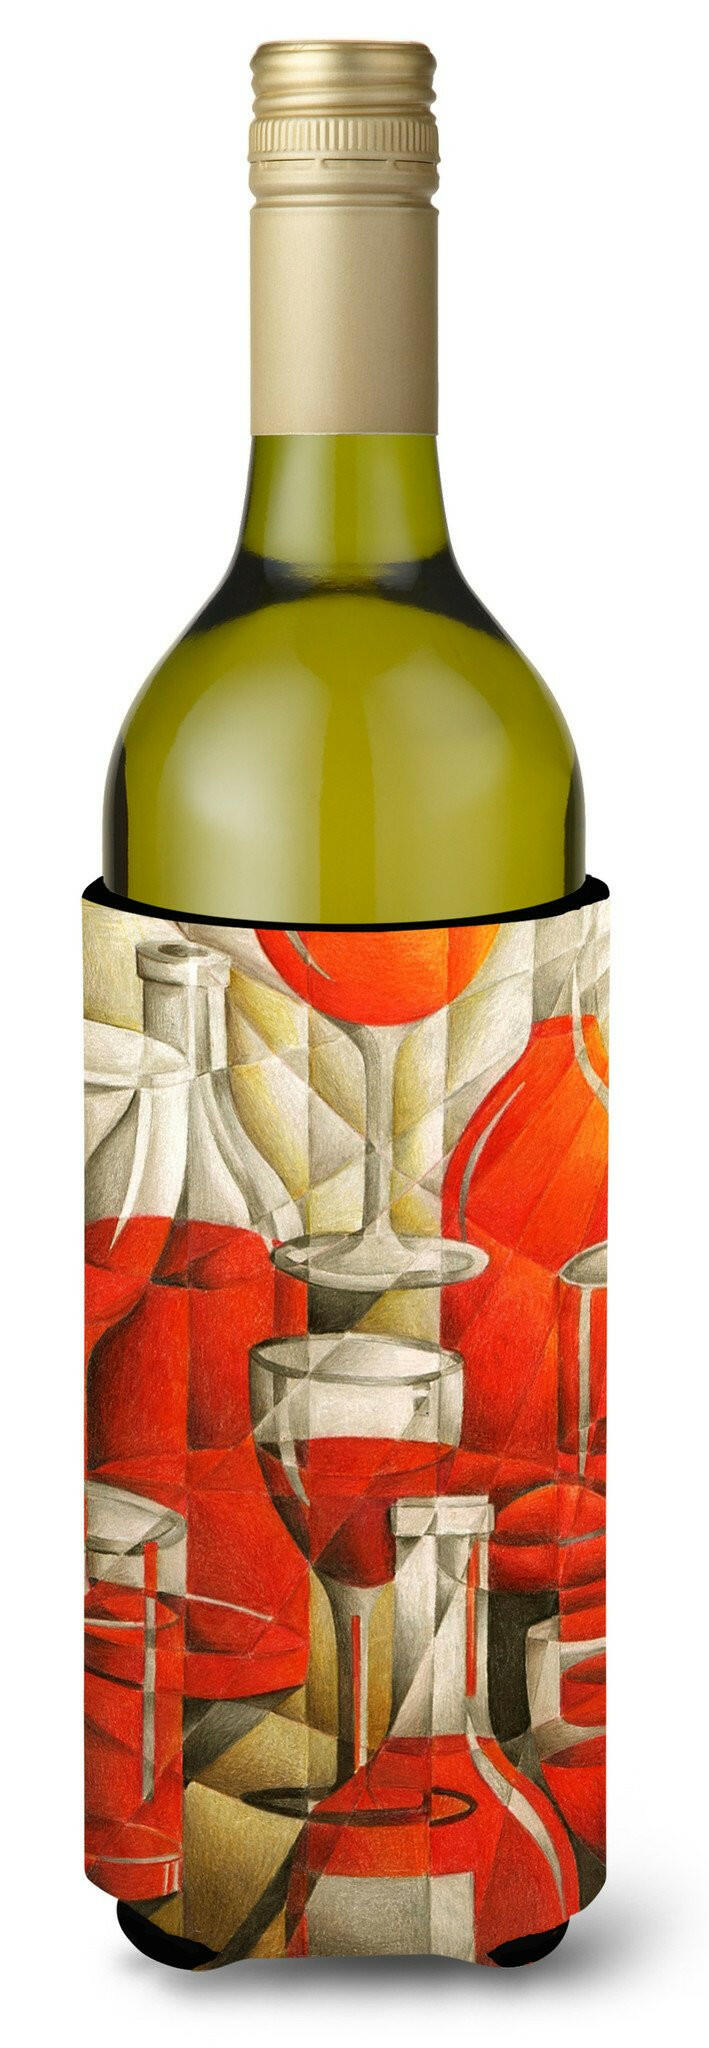 Red Wine Bottles and Glasses Wine Bottle Beverage Insulator Hugger BTBU0174LITERK by Caroline's Treasures